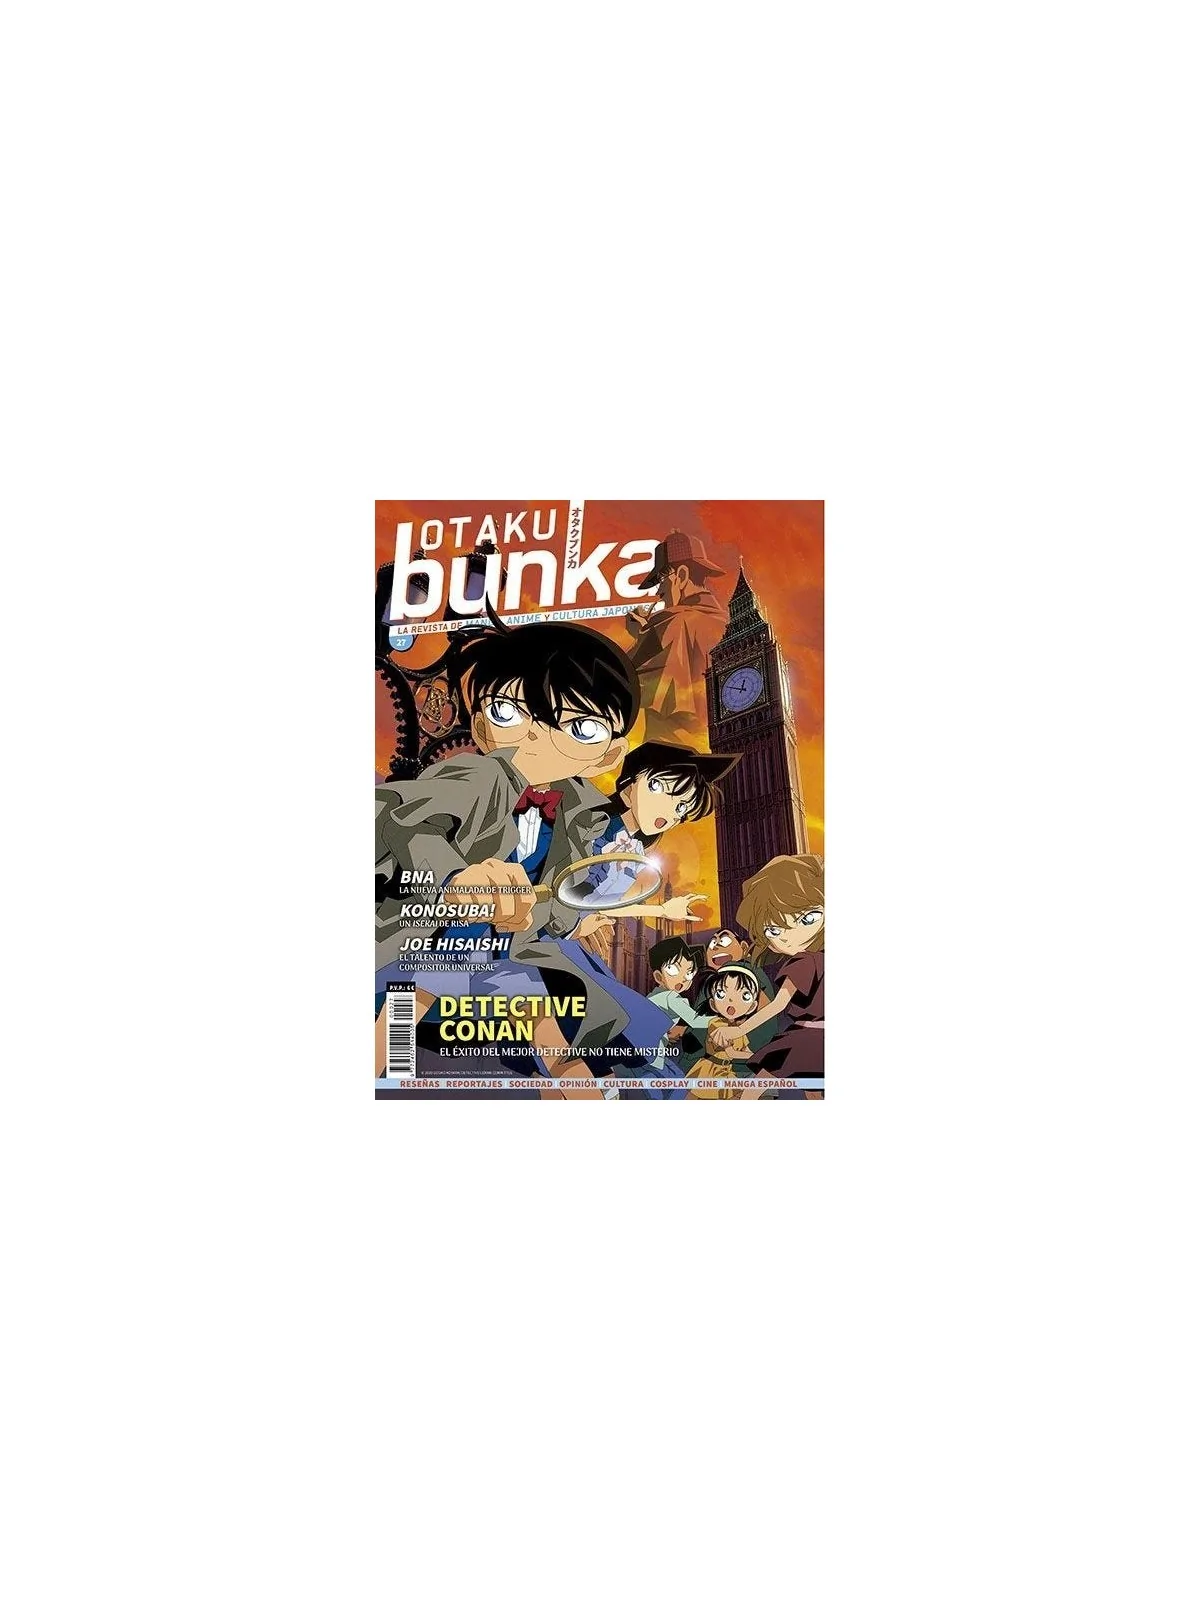 Comprar Otaku Bunka 27 barato al mejor precio 5,70 € de Panini Comics